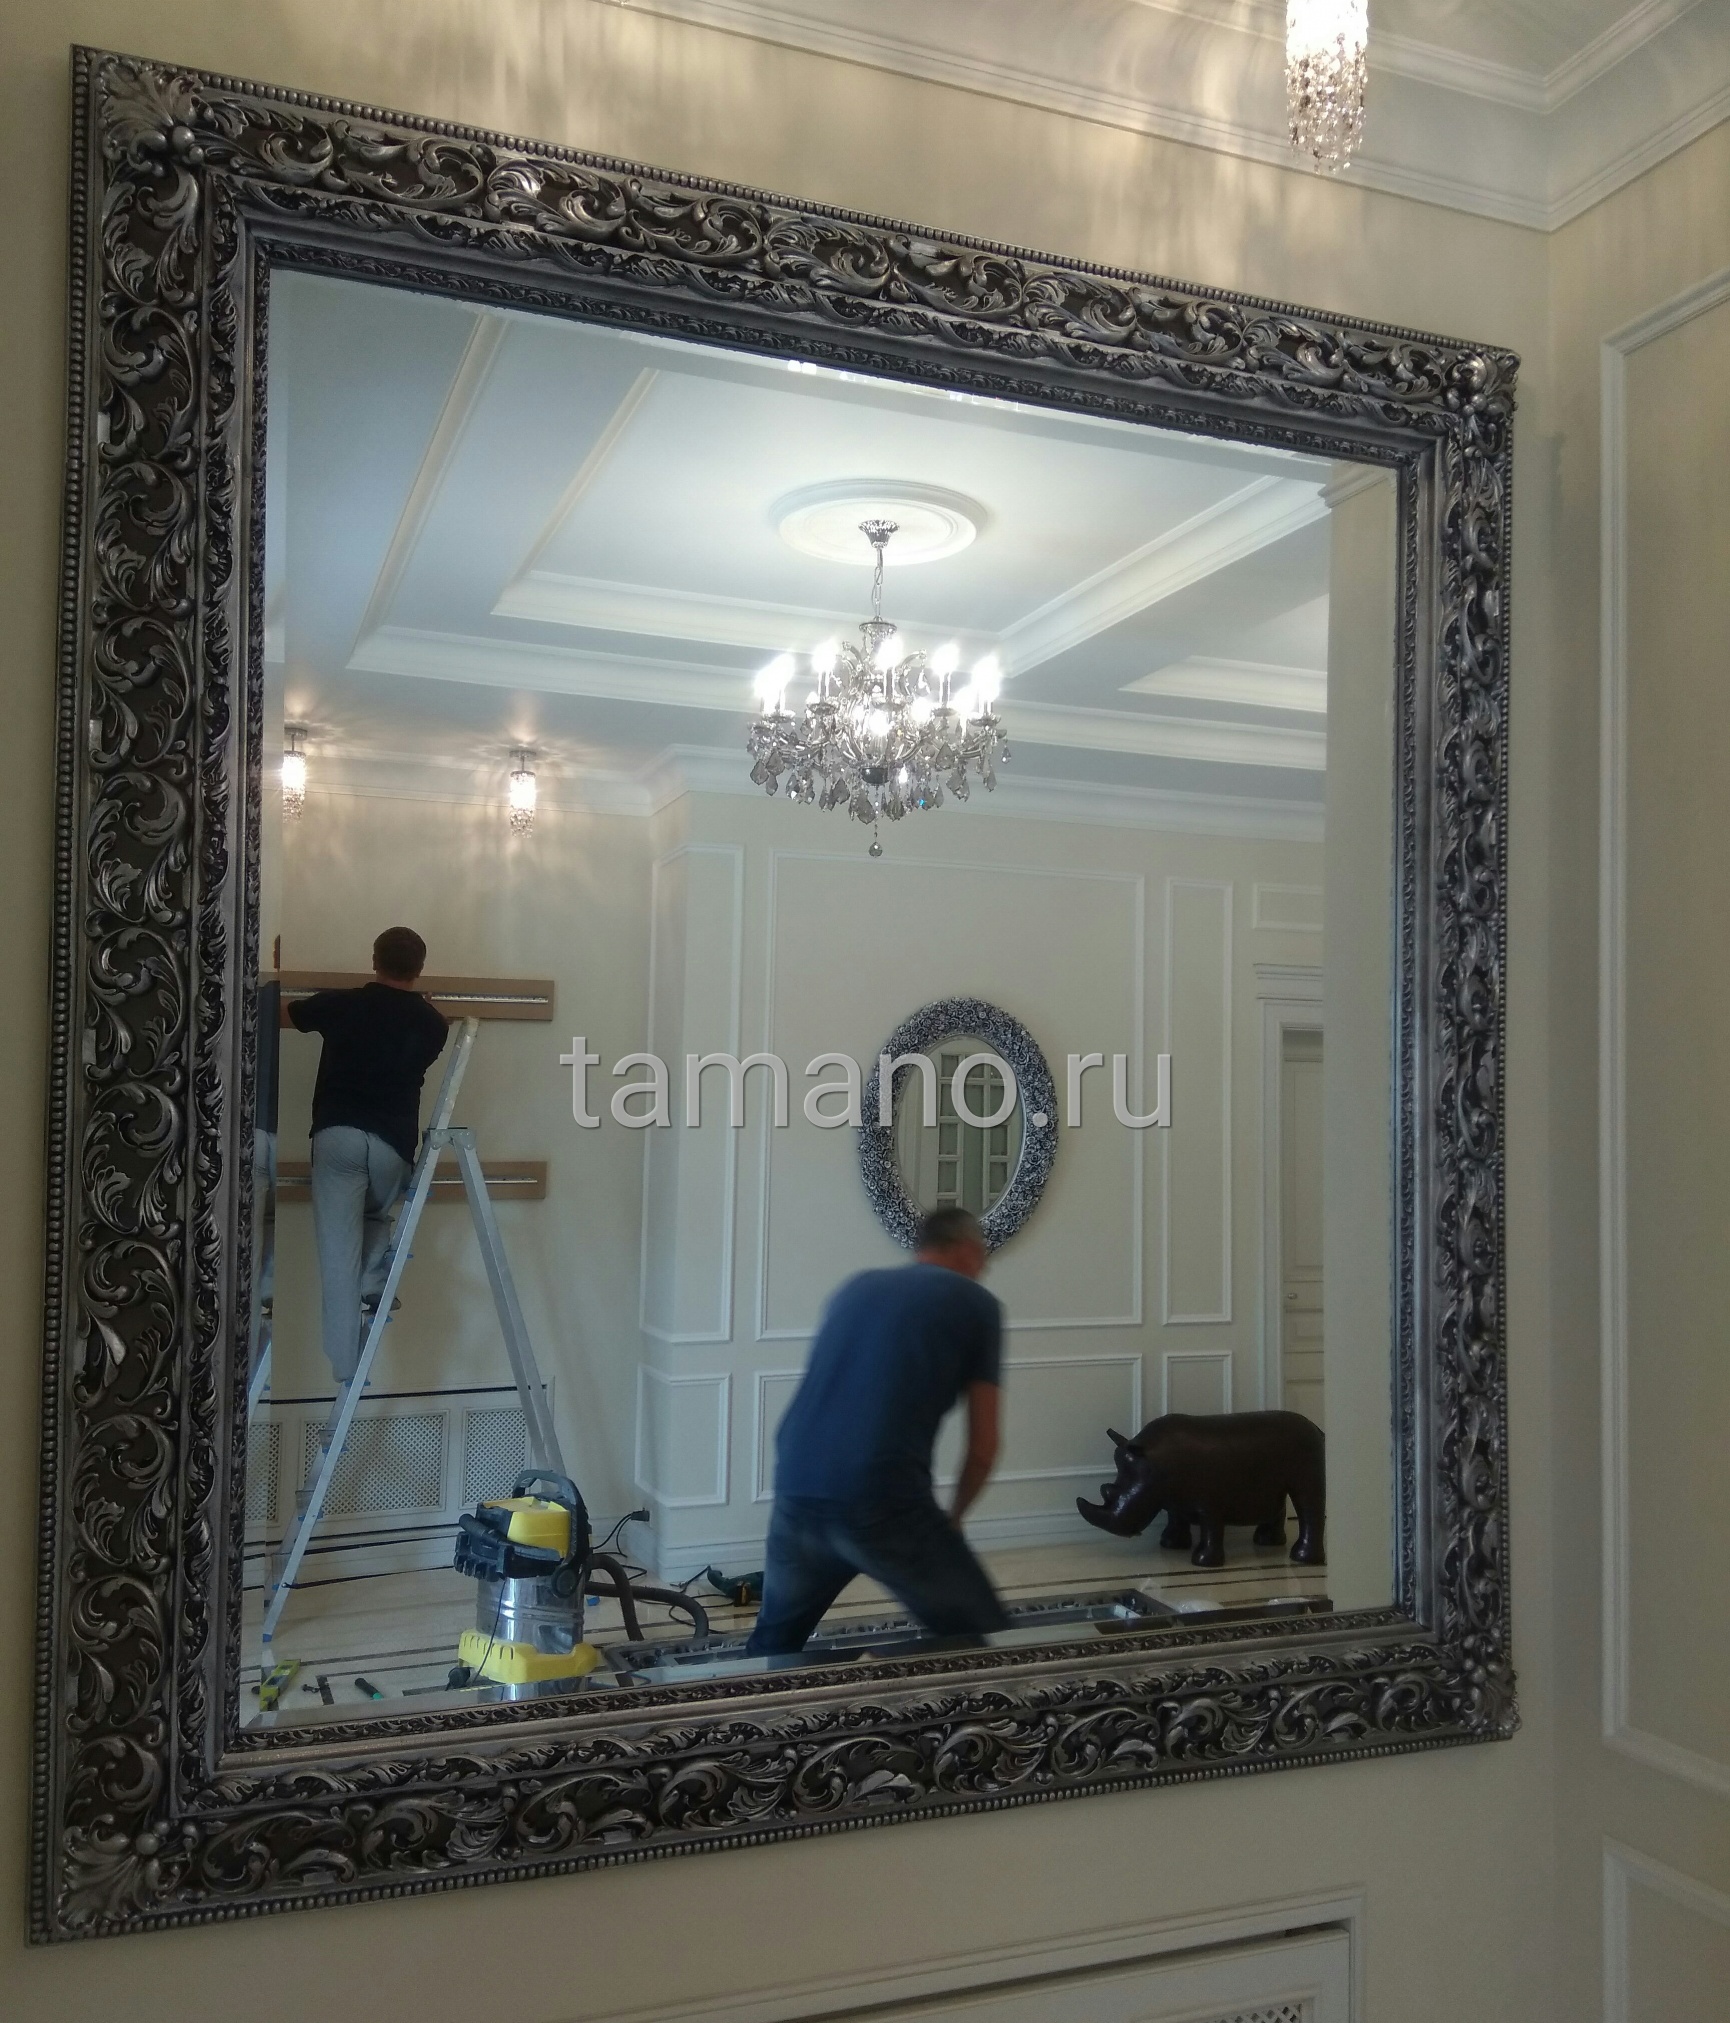 Монтаж больших зеркал в рамах в загородном доме